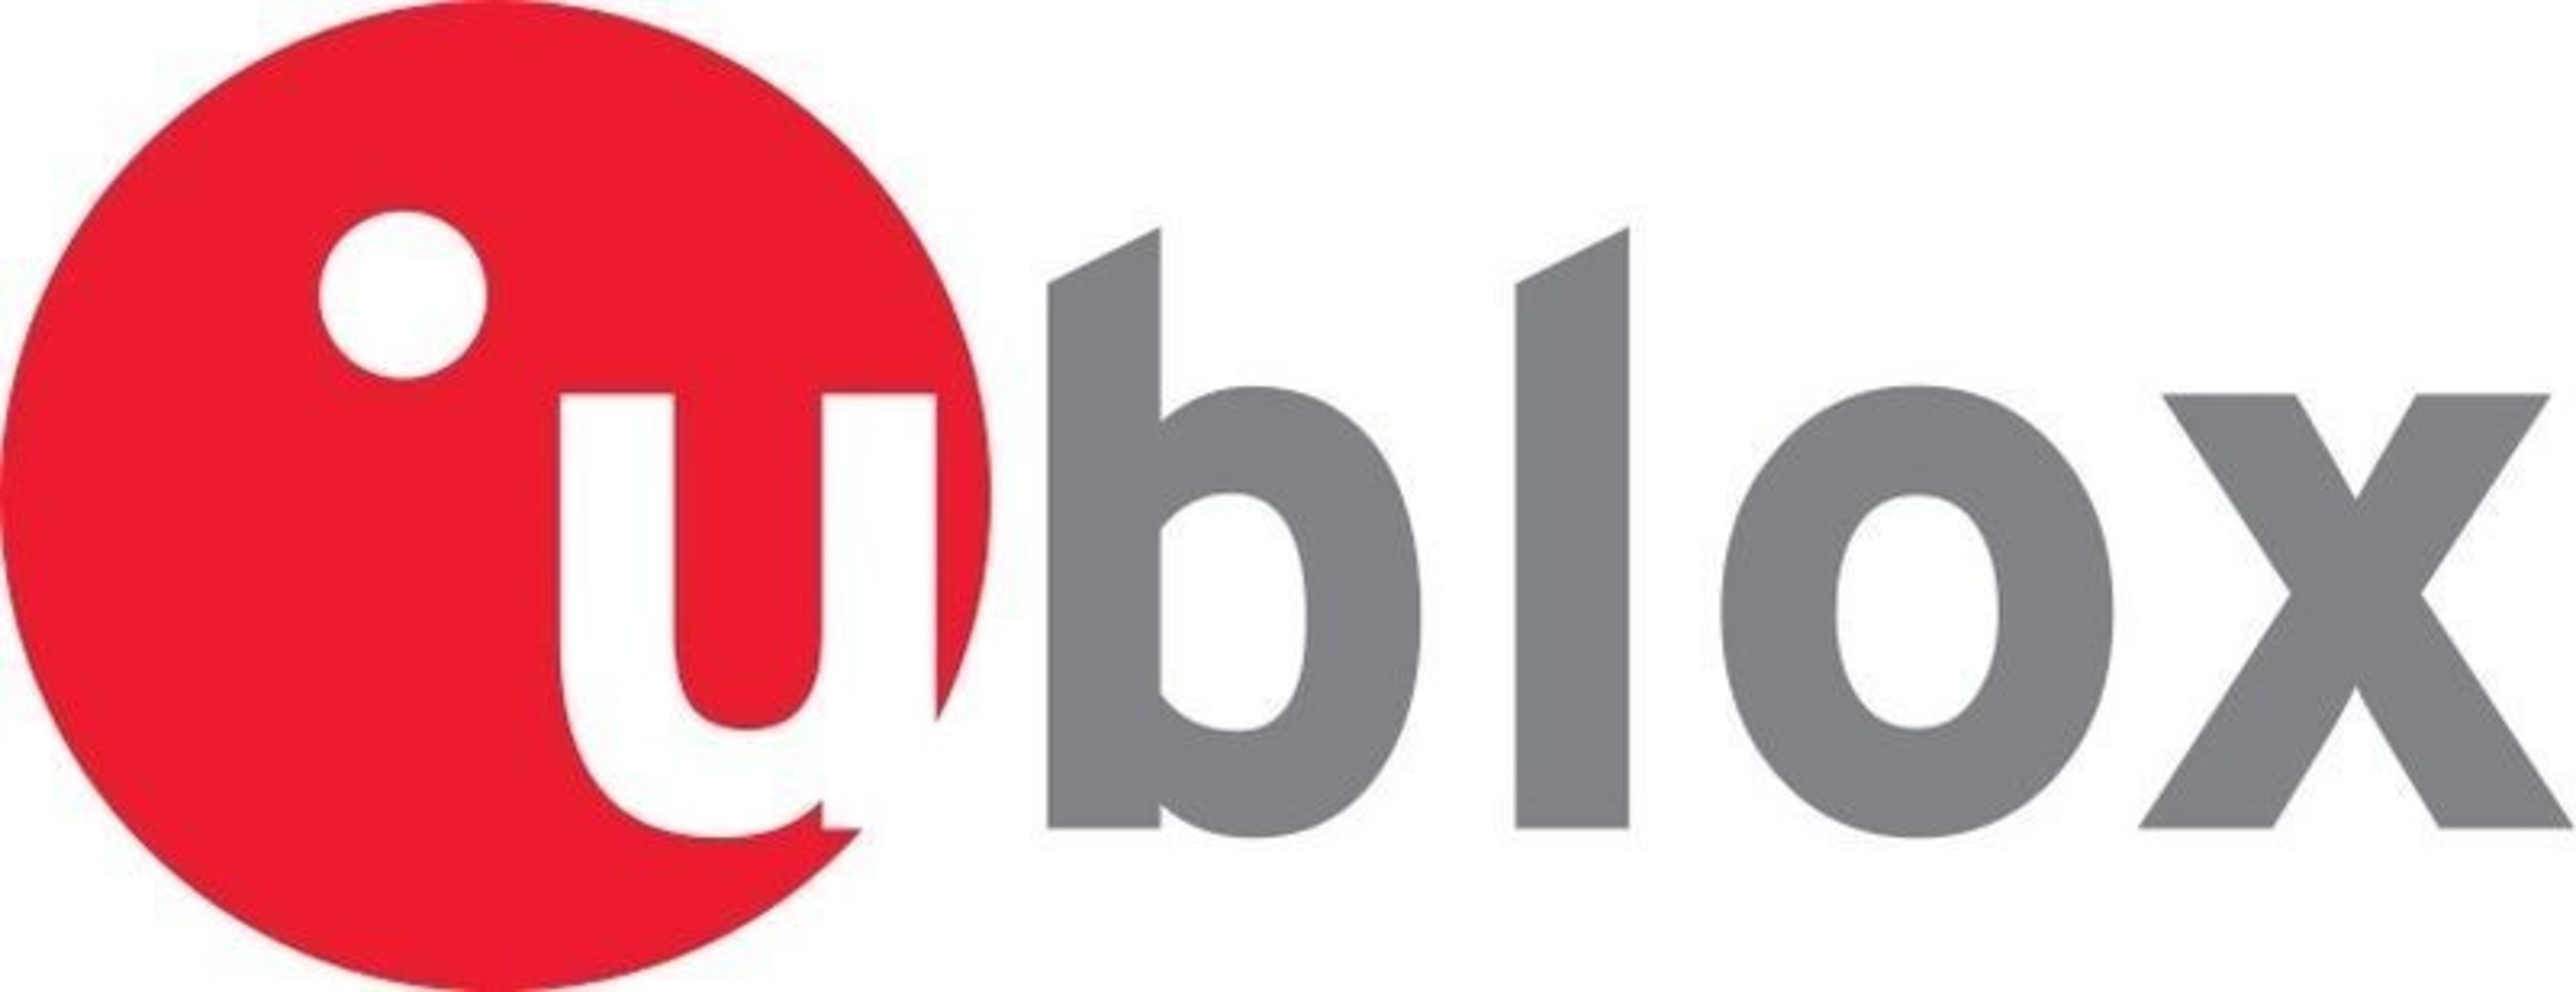 u-blox Logo (PRNewsFoto/u-blox) (PRNewsFoto/u-blox)